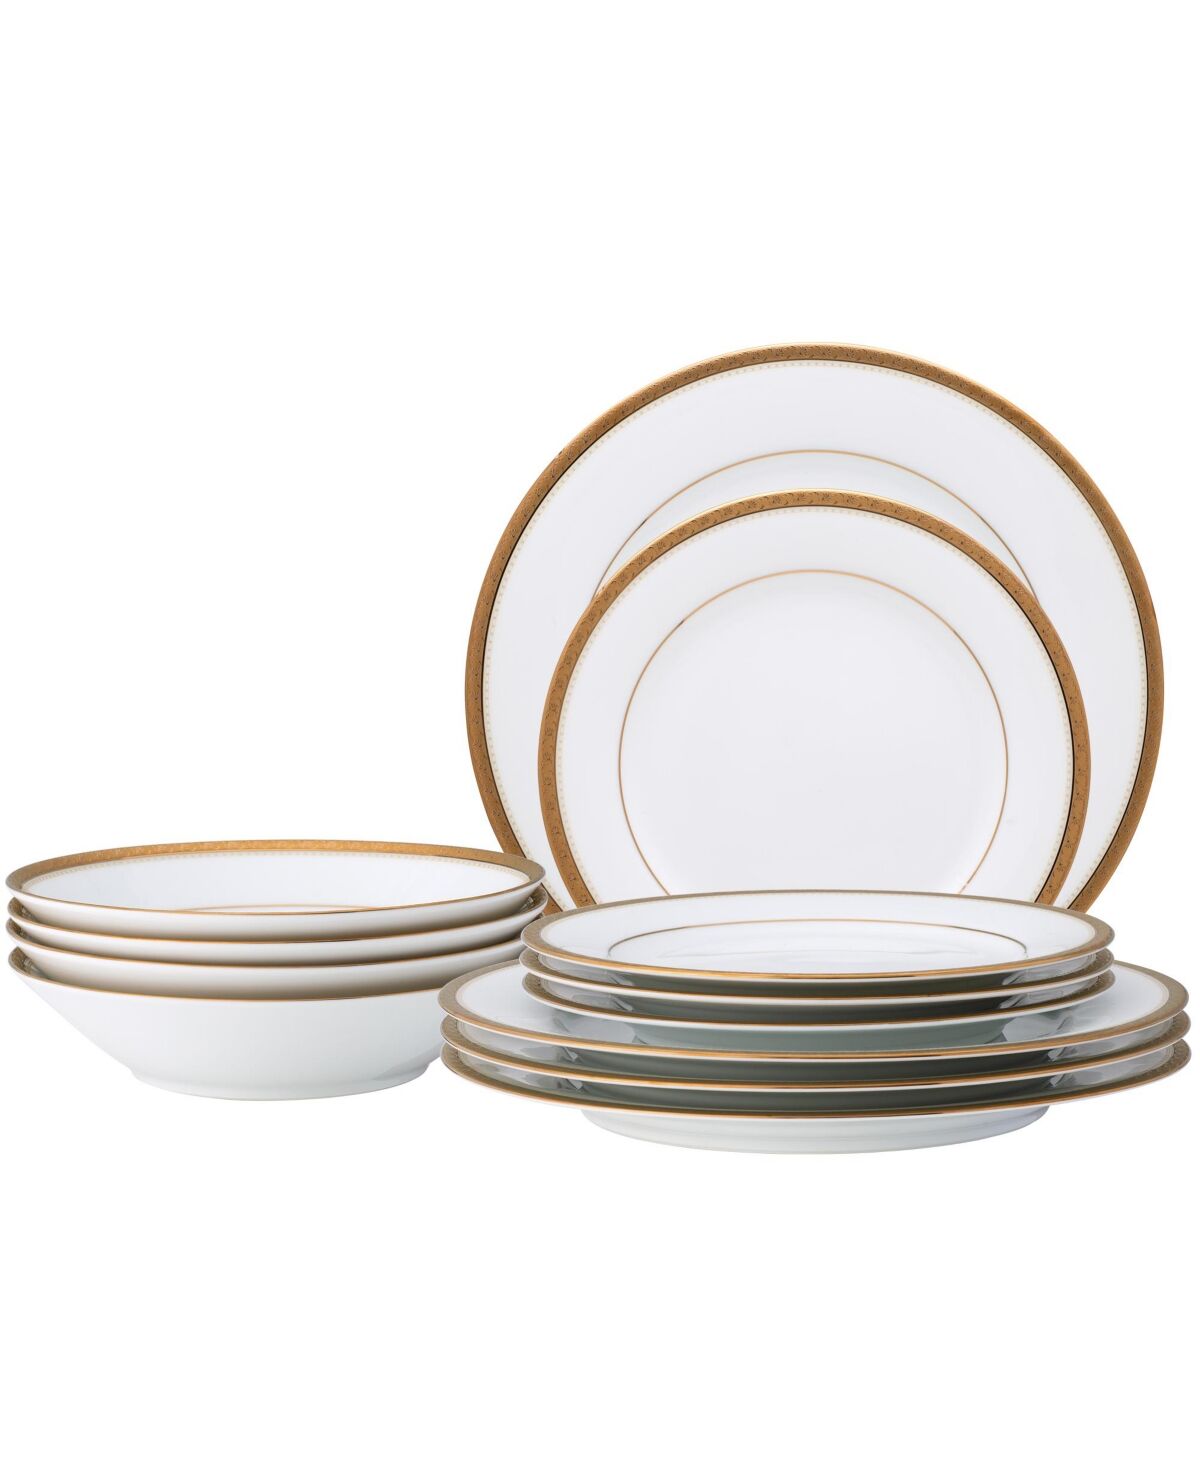 Noritake Charlotta Gold 12 Pc Dinnerware Set - White And Gold